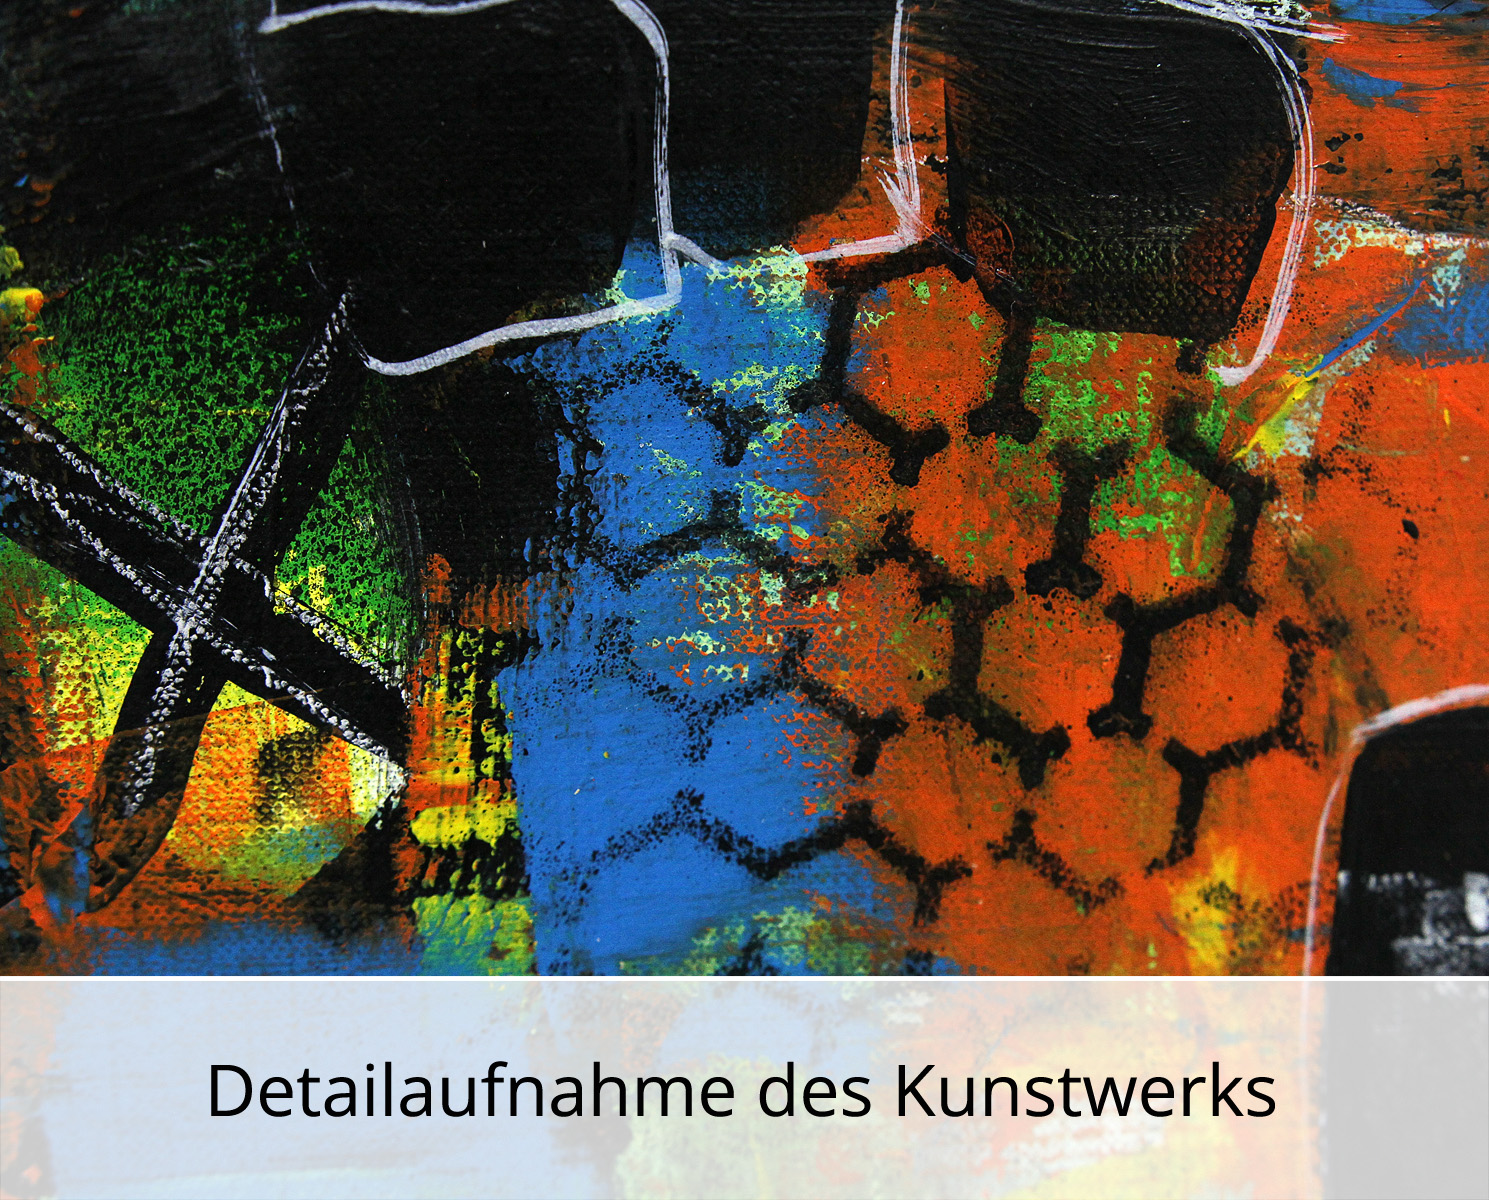 I. Schmidt: "Wenn die Stadt erzählt... Werk Nr. 12", zeitgenössische Grafik/Malerei, Original/Unikat